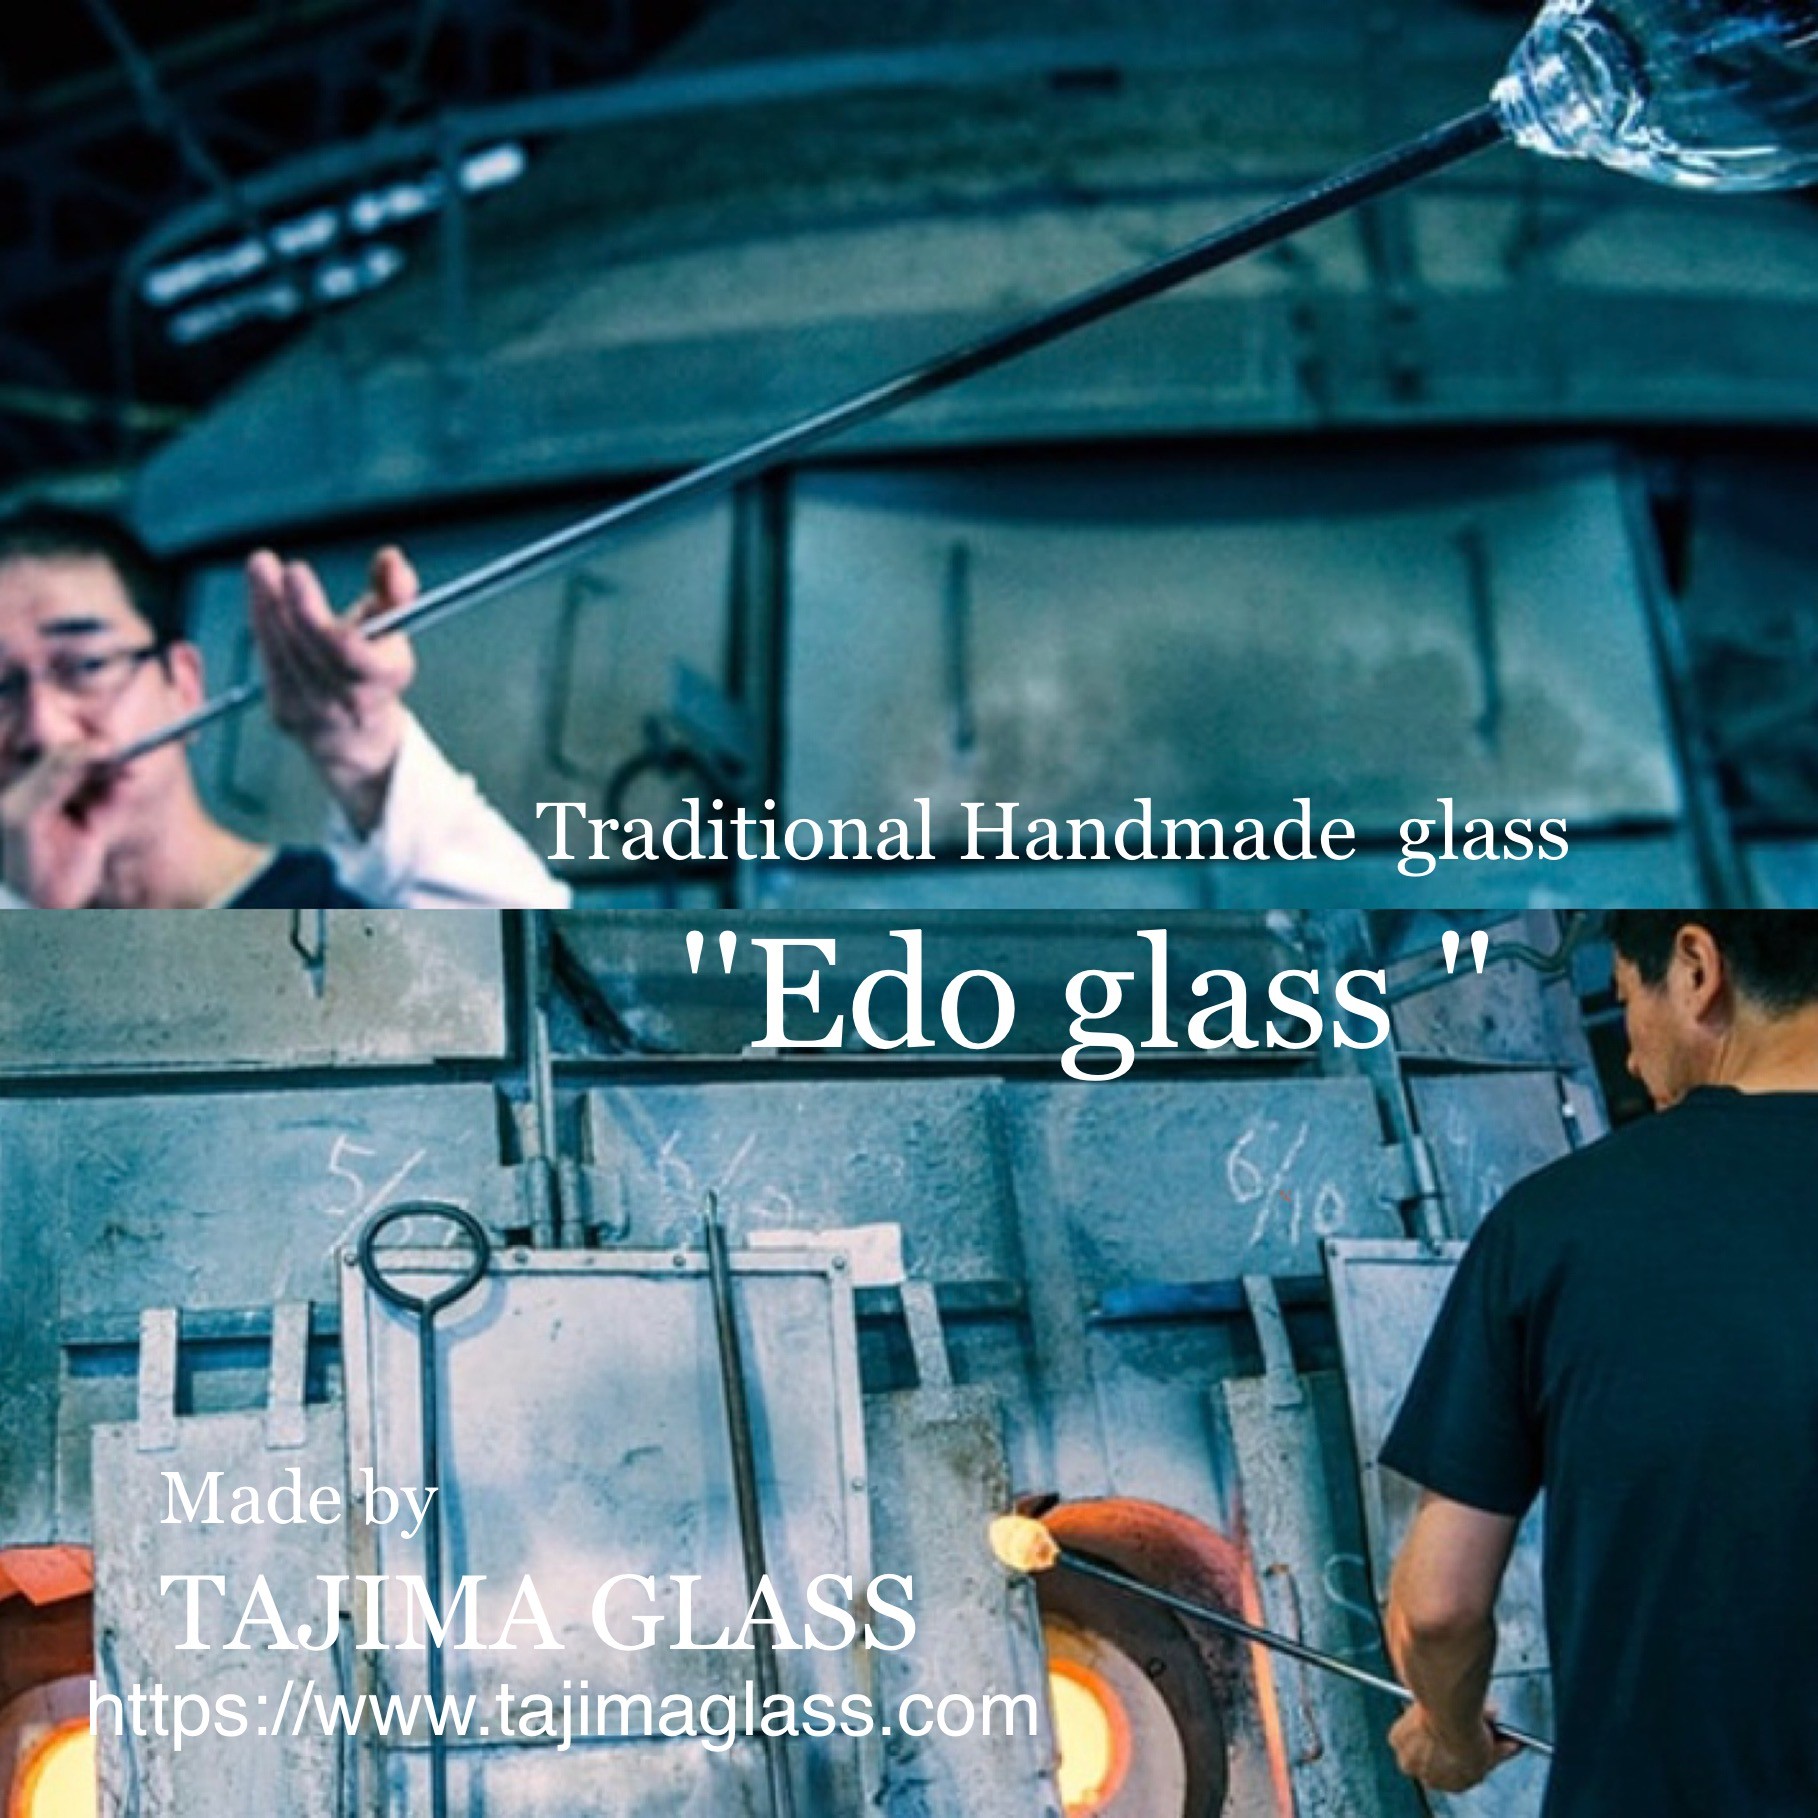 傳統工法與高雅集聚一身 全手工製作的玻璃工藝品「江戶硝子」